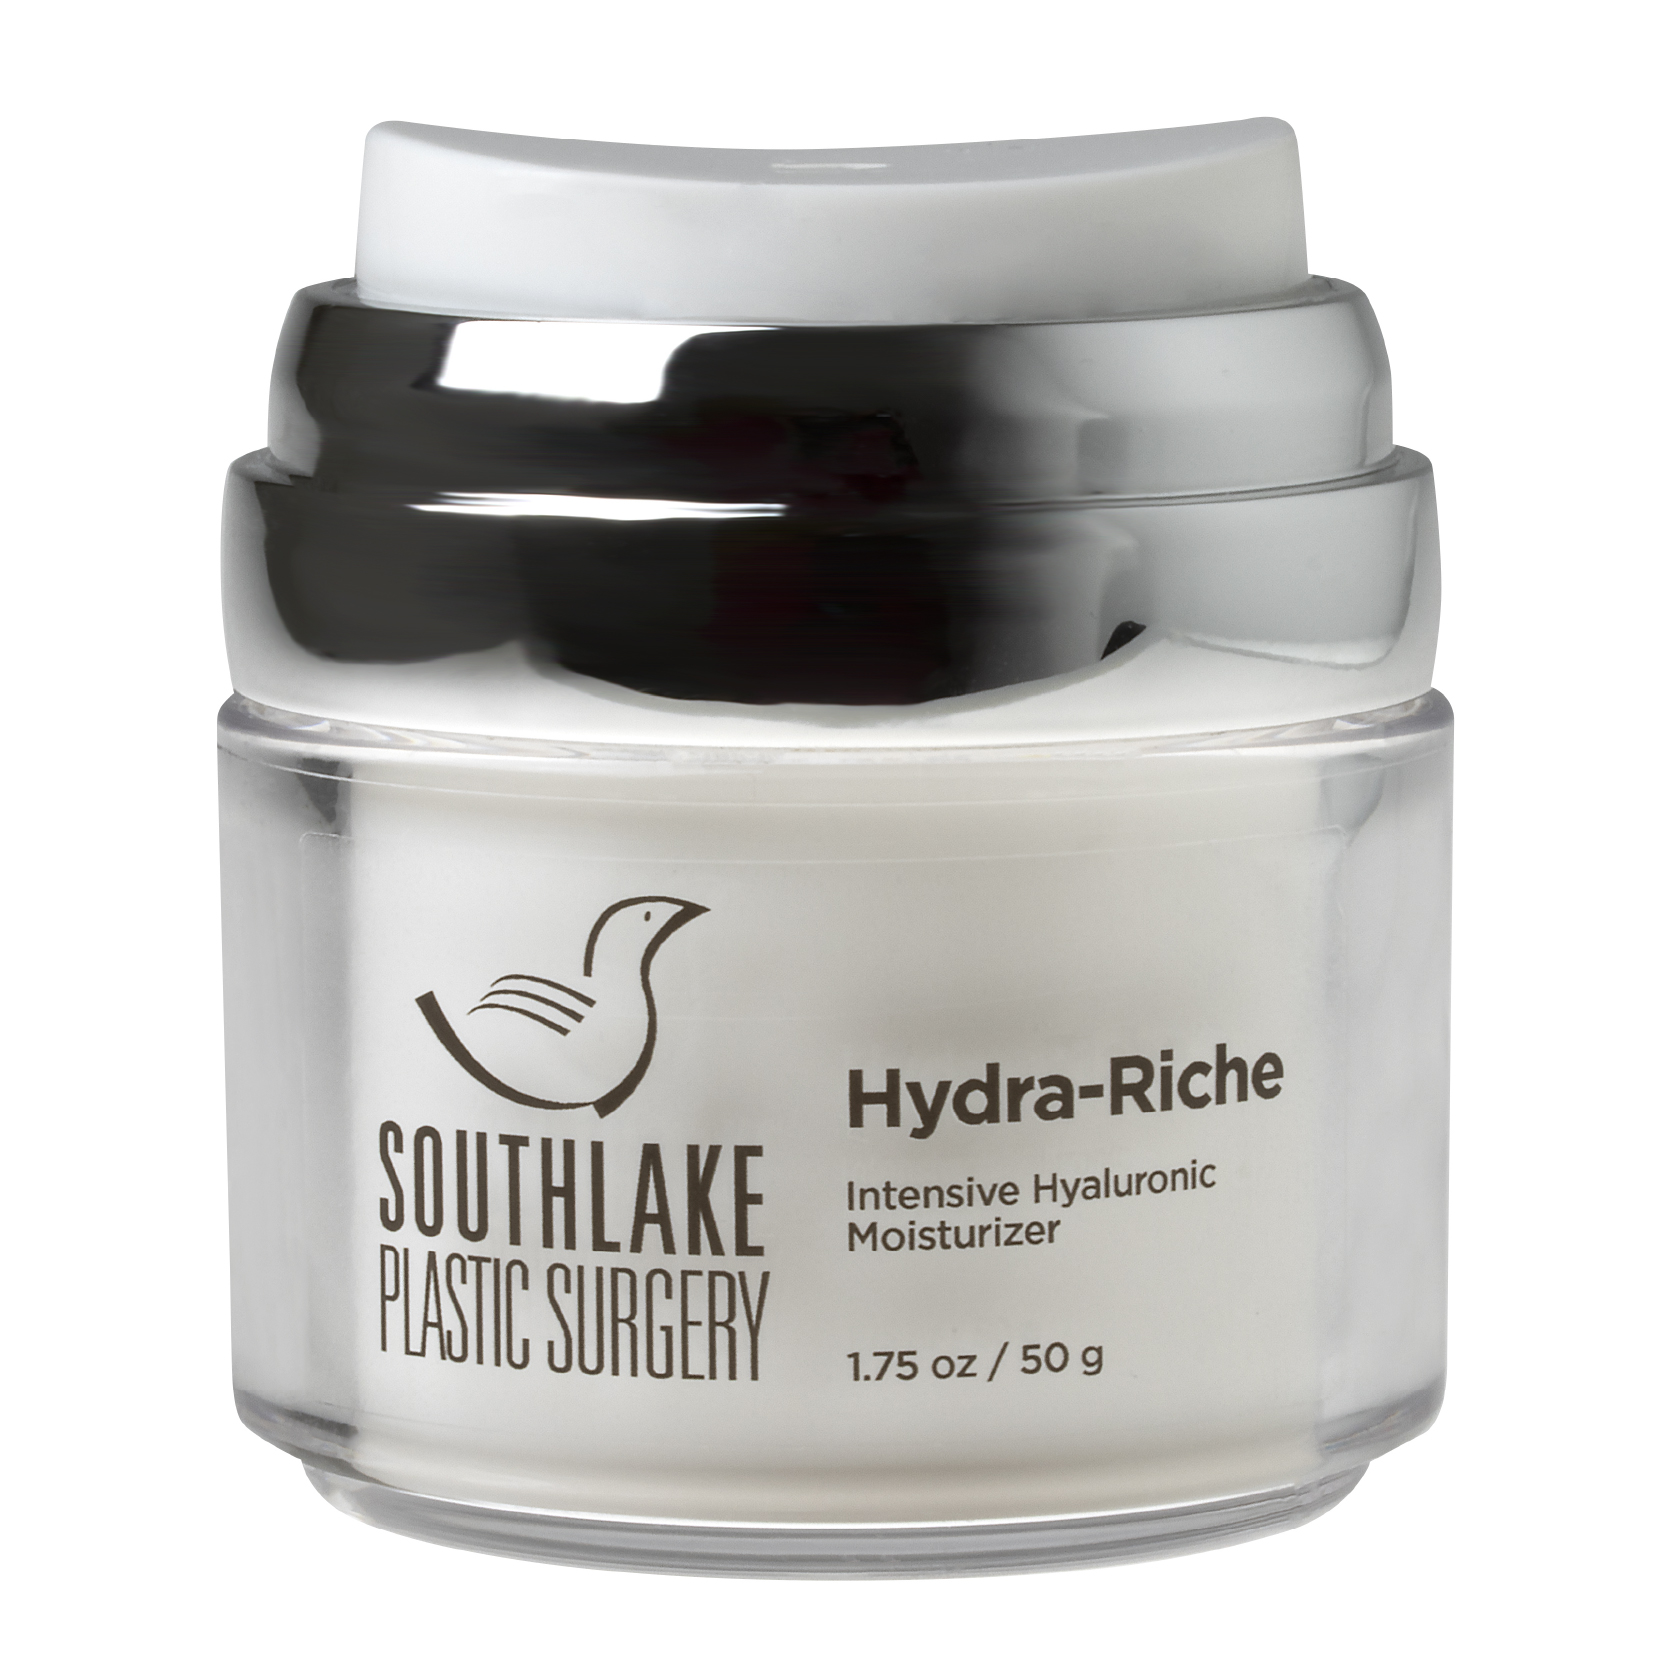 Southlake Plastic Surgery Hydra-Riche product